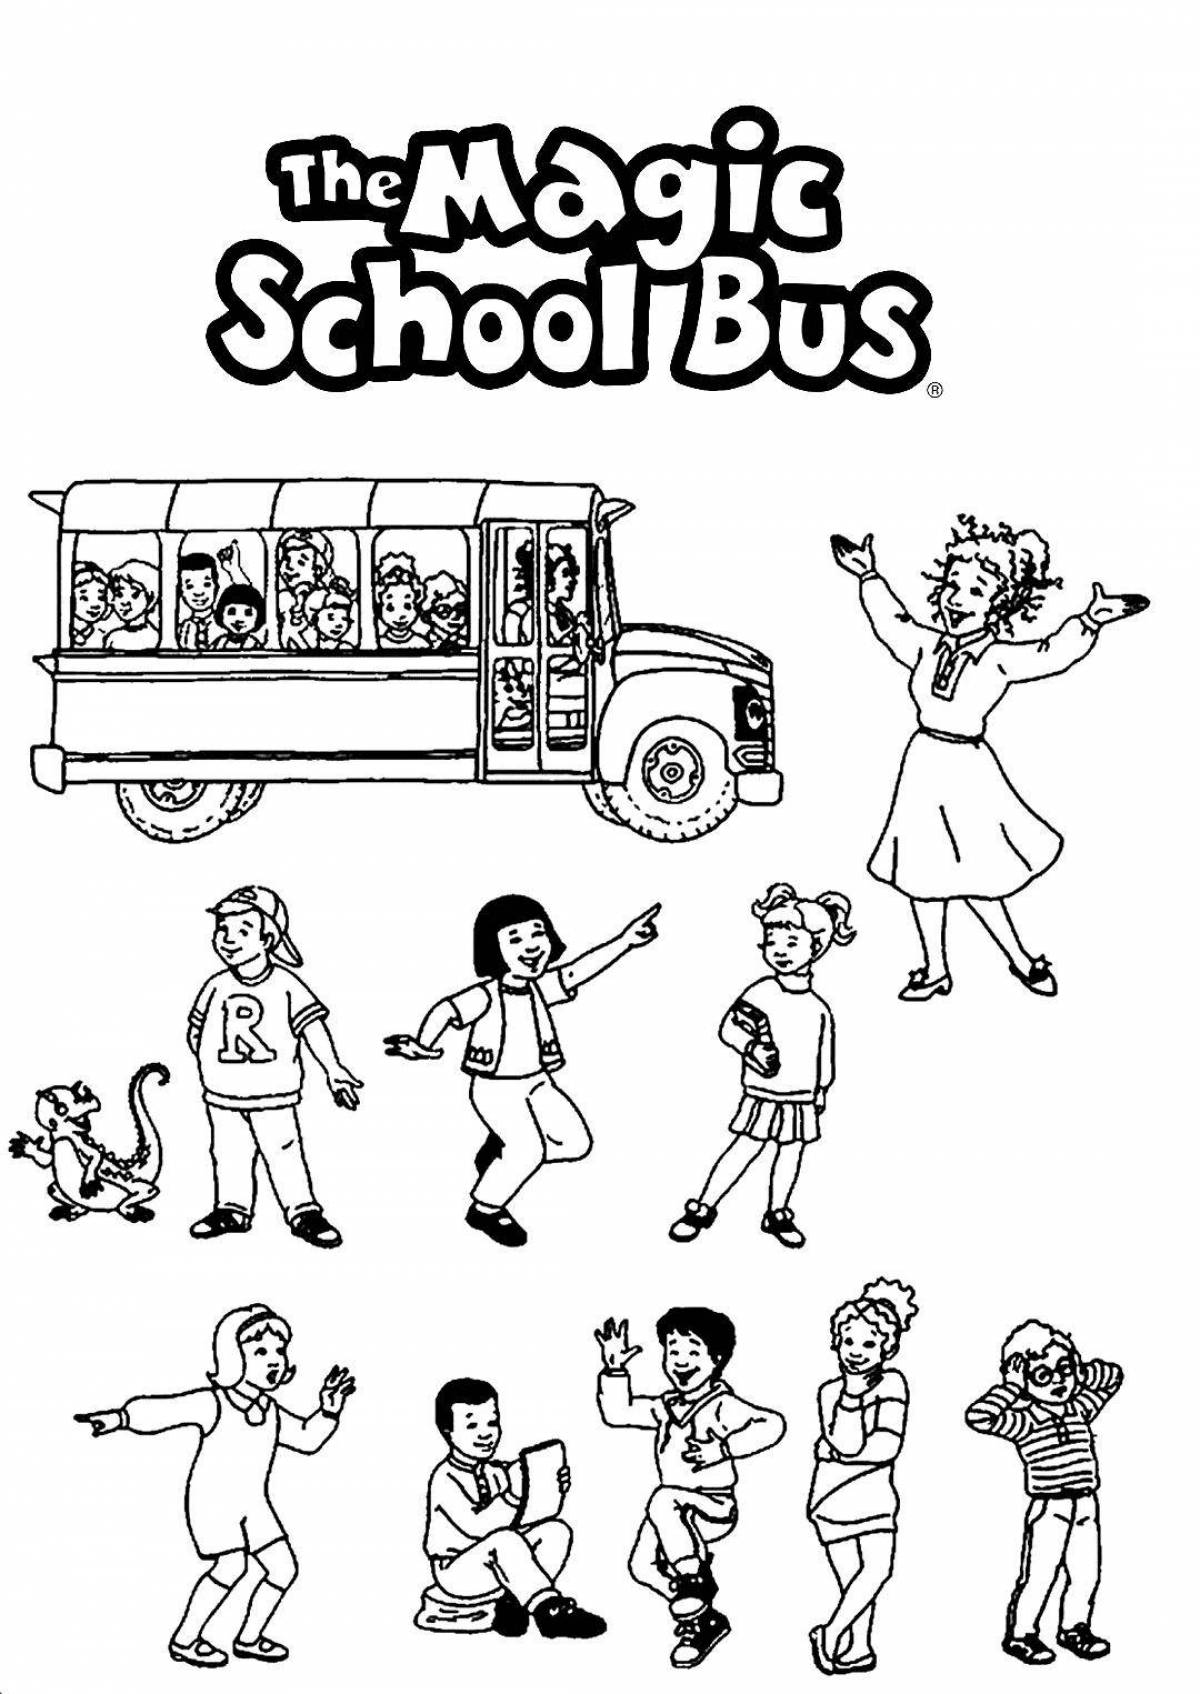 Gordon's nice school bus coloring page